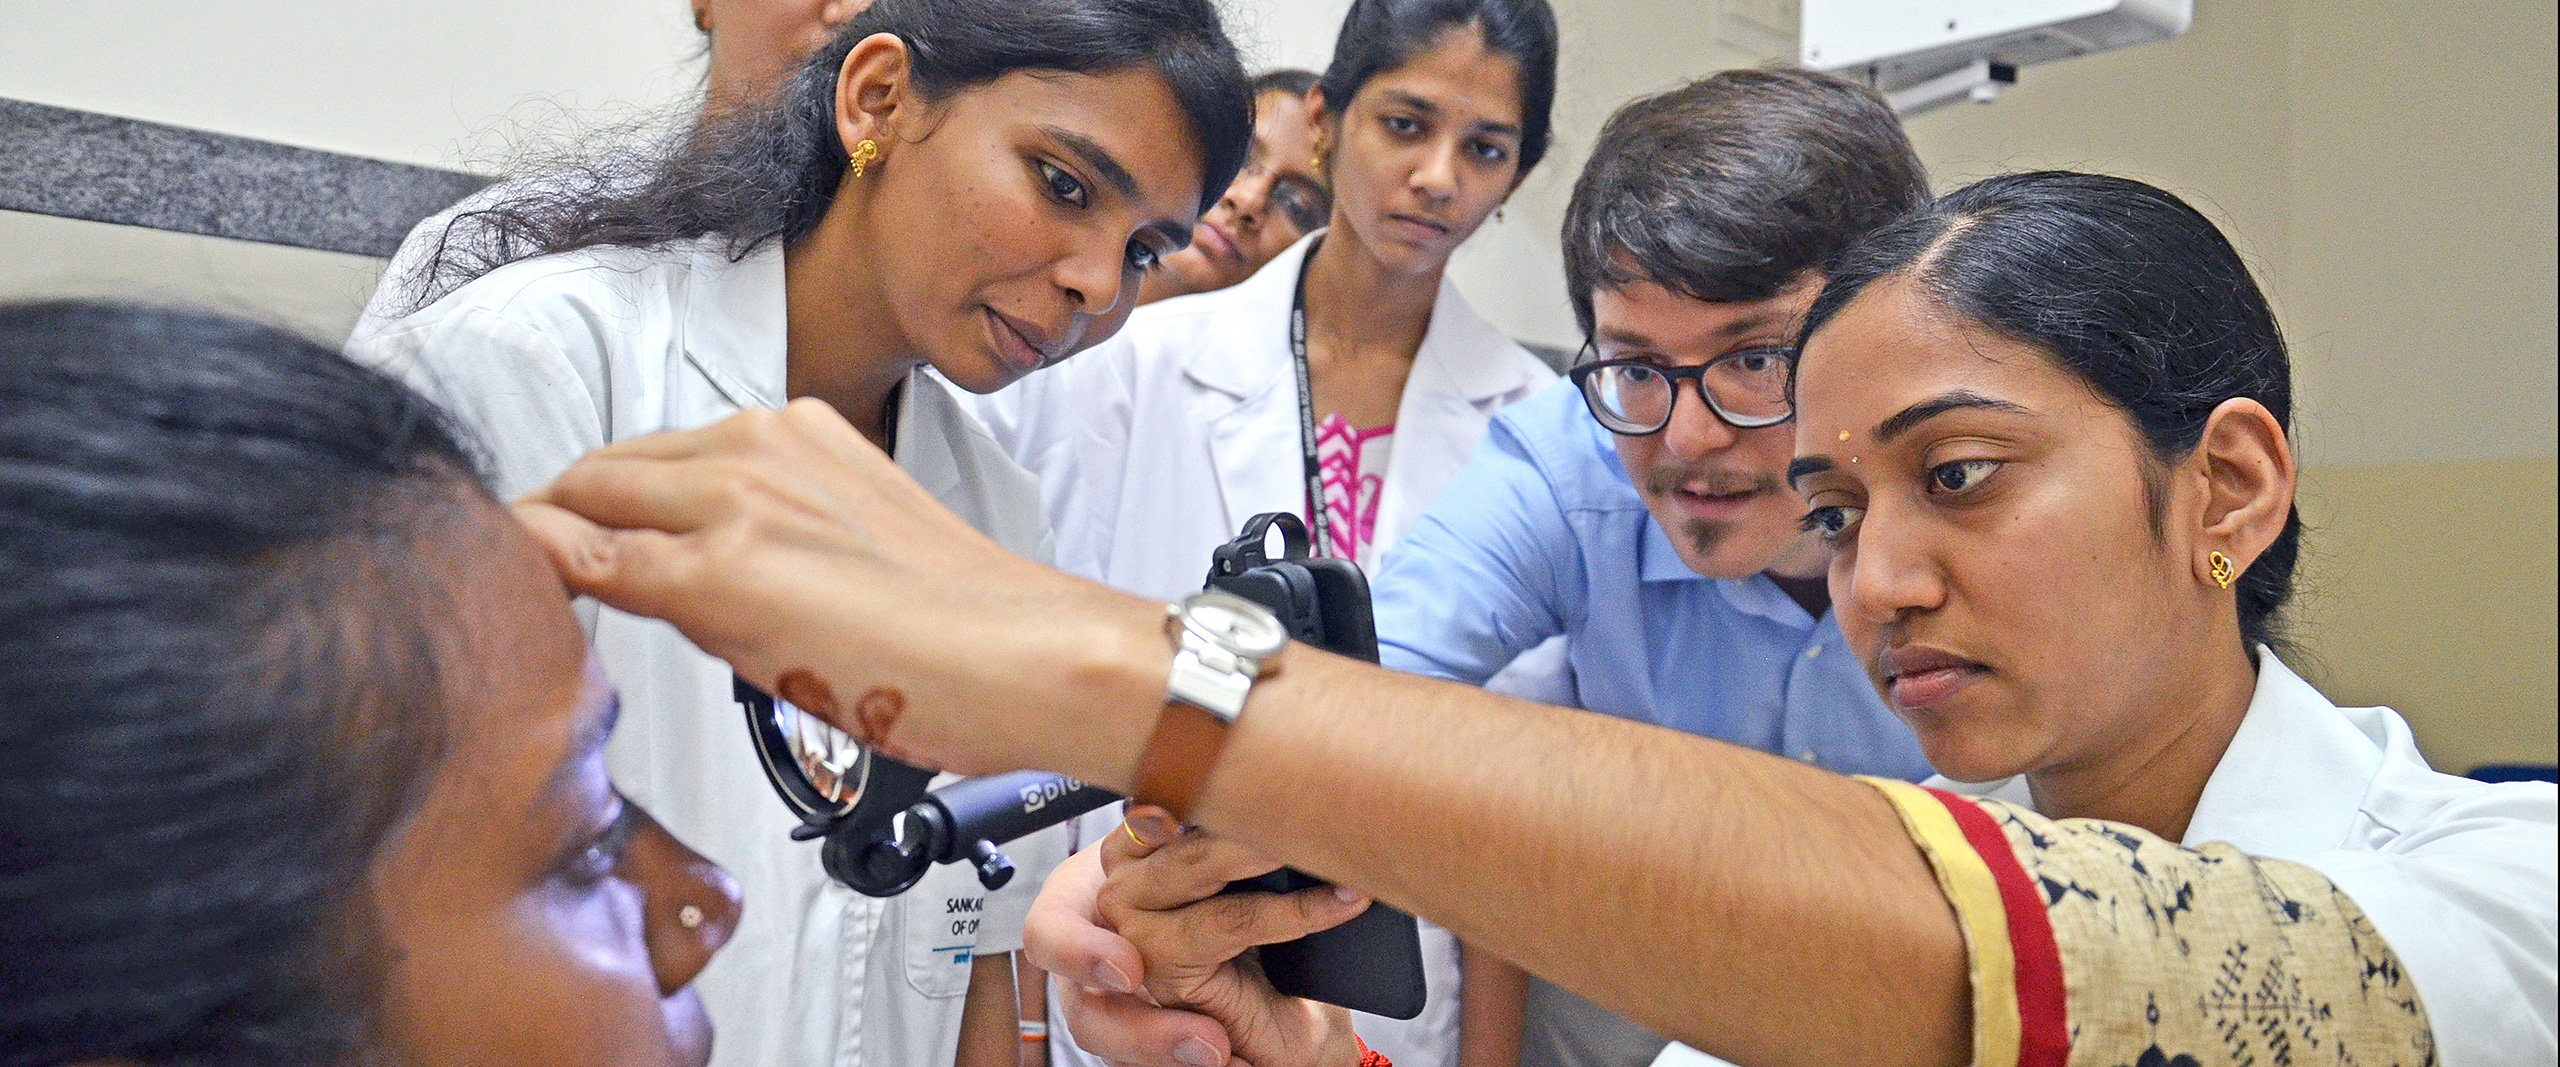 Kostengünstiges Augen-Screening per Telemedizin von Menschen mit Diabetes in Indien